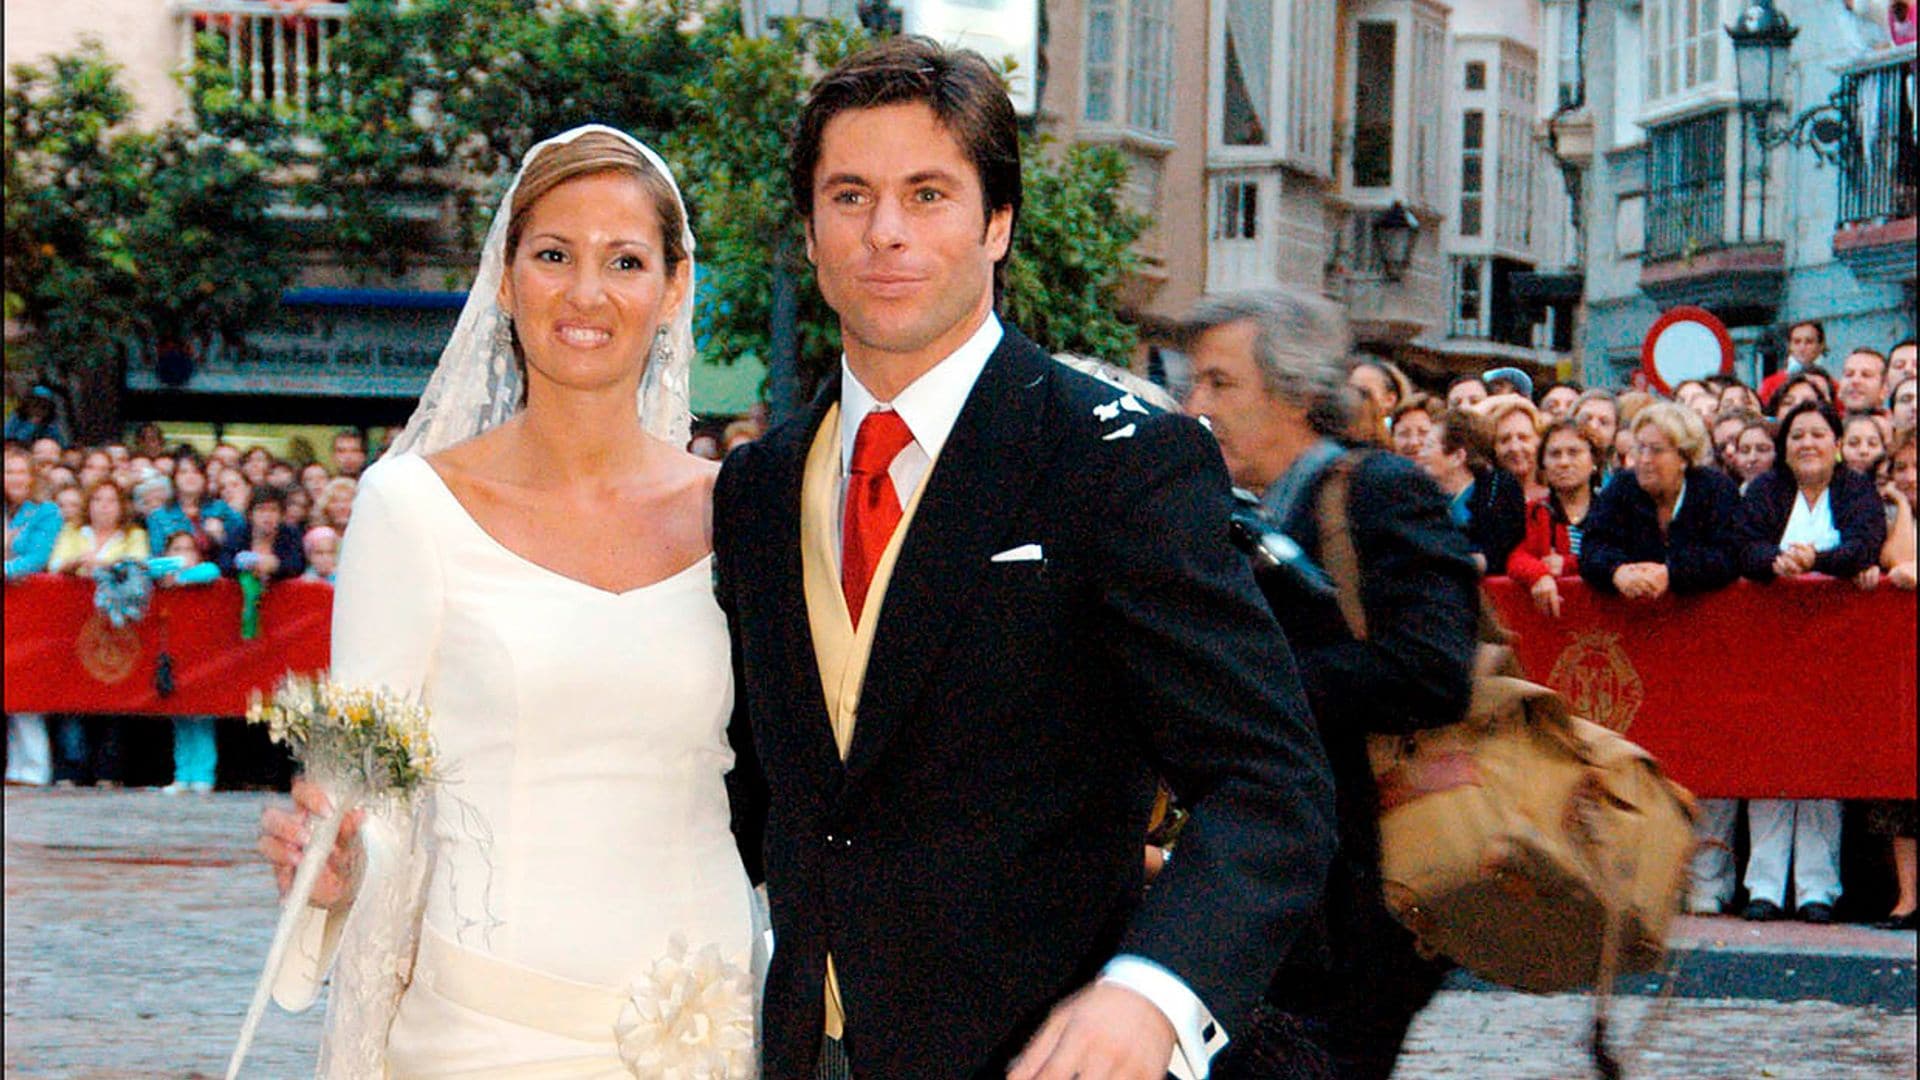 Recordamos la vida amorosa de Canales Rivera, desde su boda en 2004 a su 'affaire' con Alba Carrillo